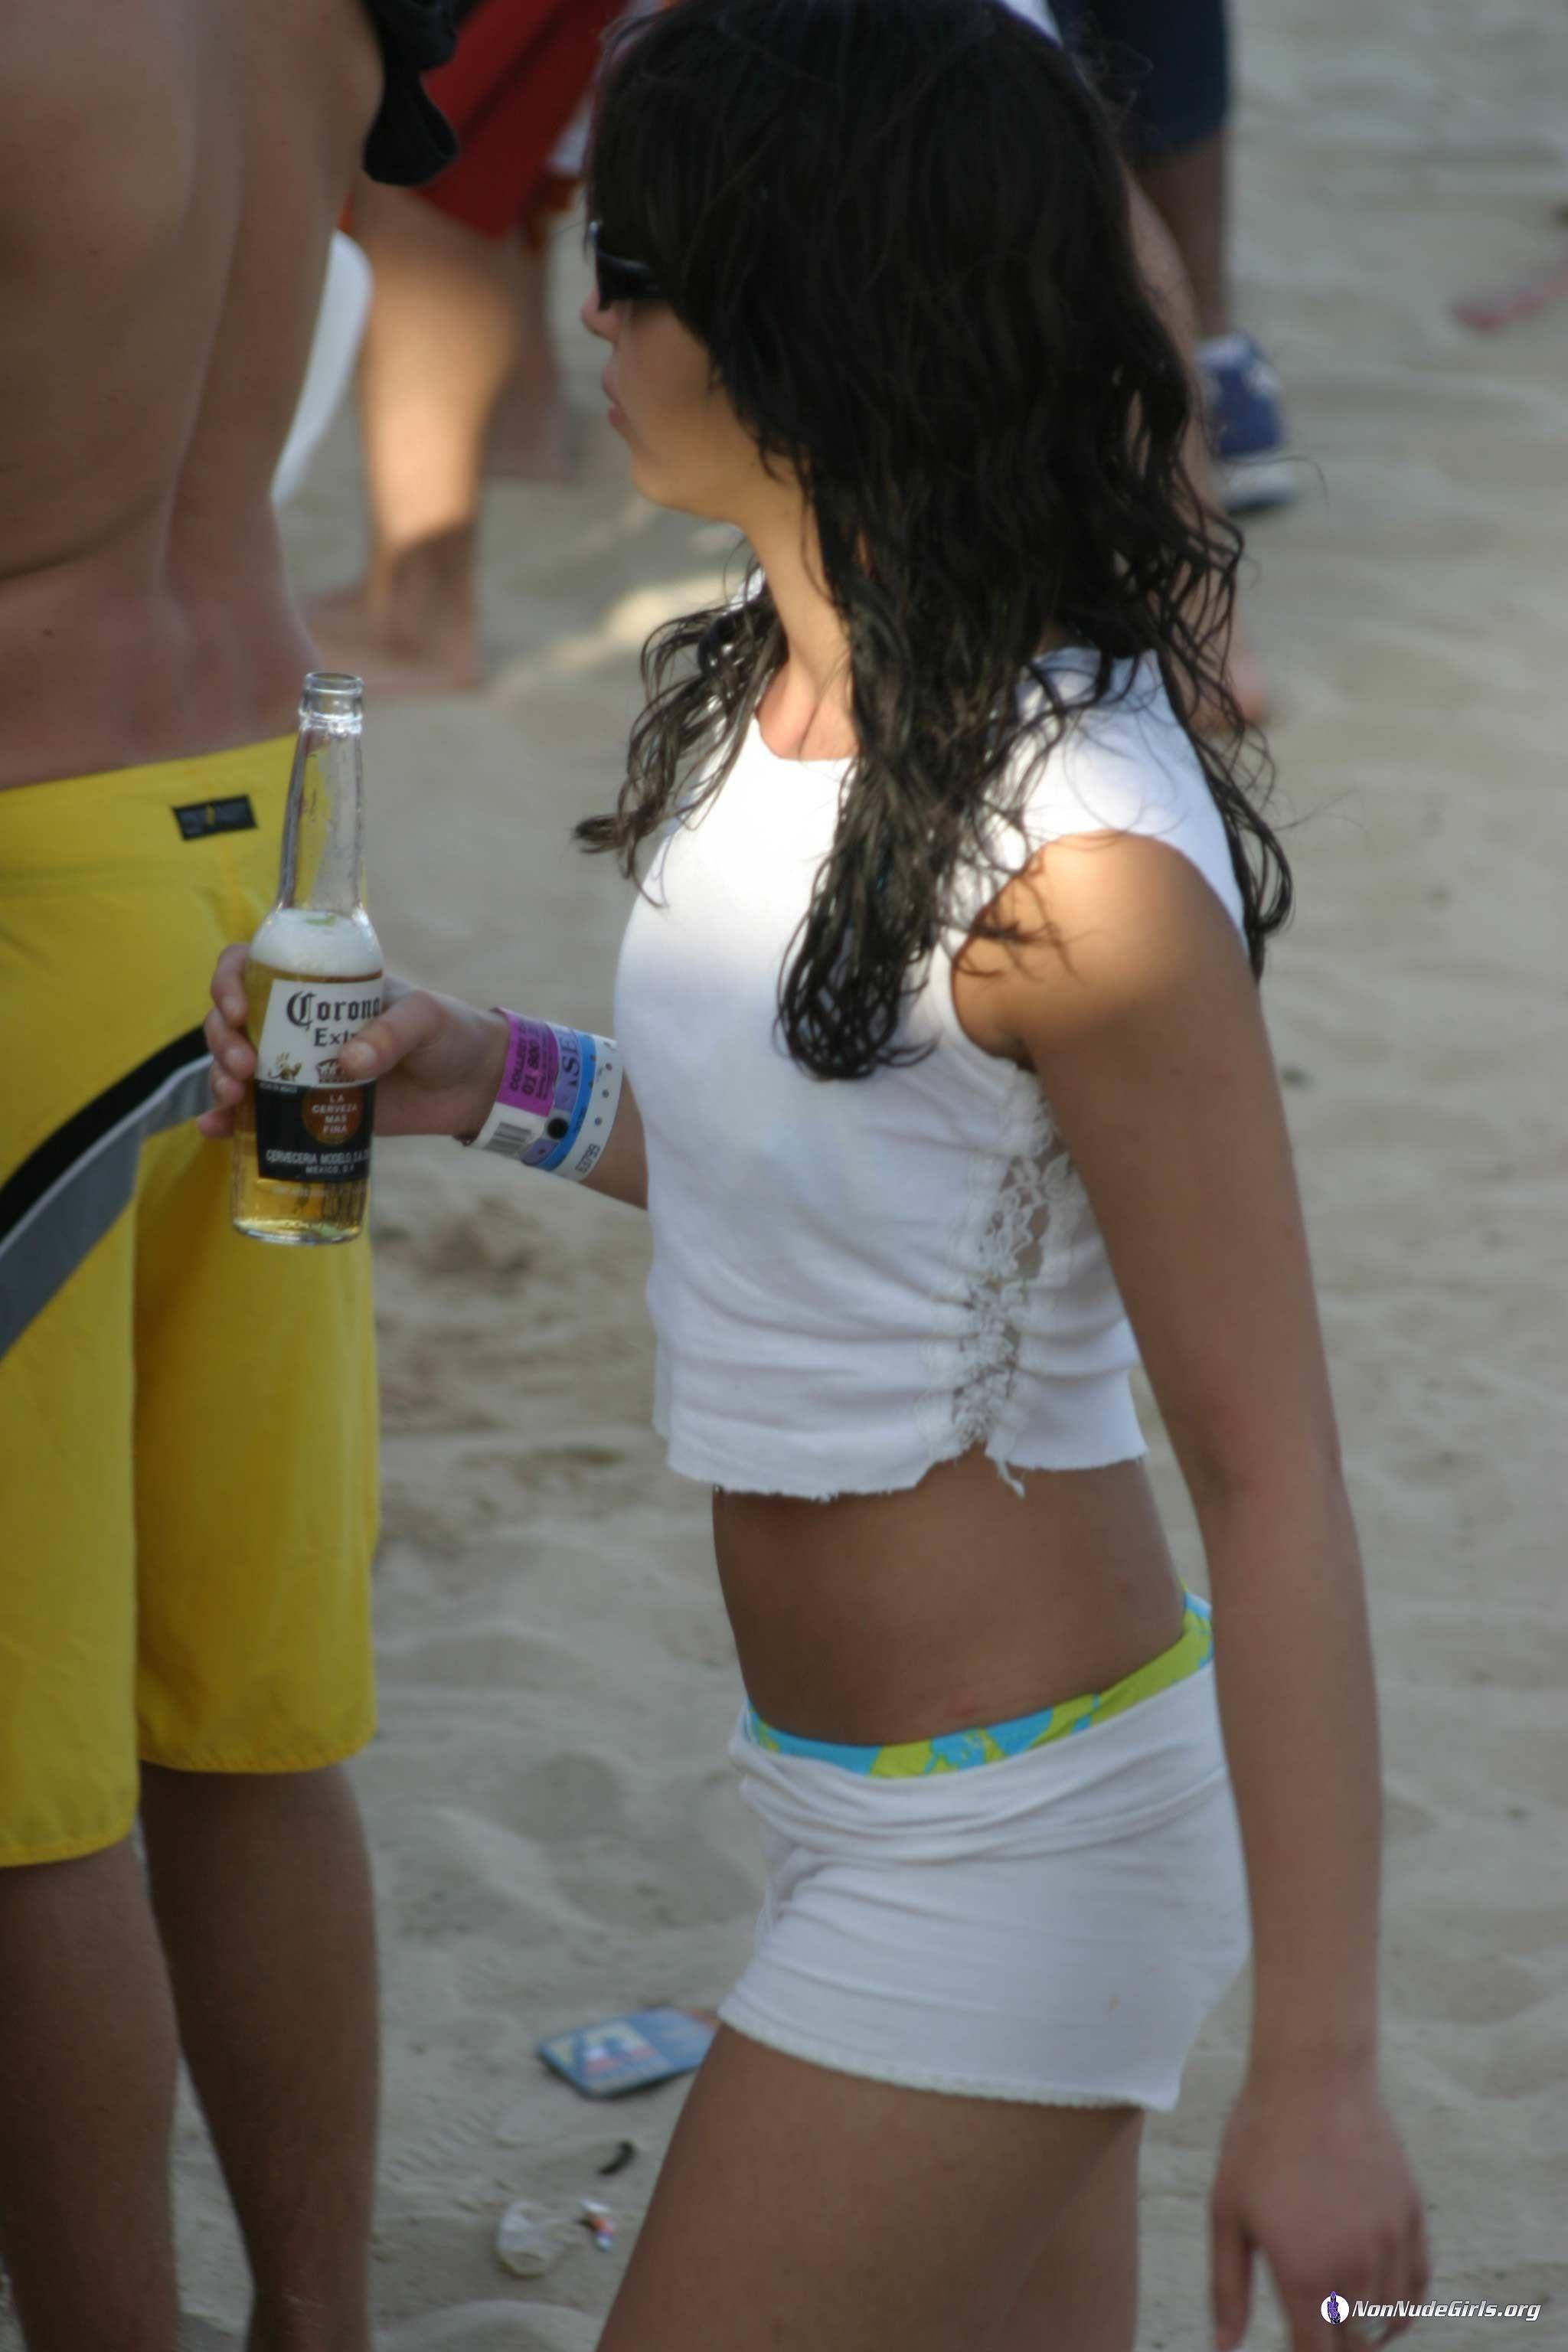 Bilder von heißen Teenie-Mädchen beim Feiern am Strand und in Clubs
 #60680345